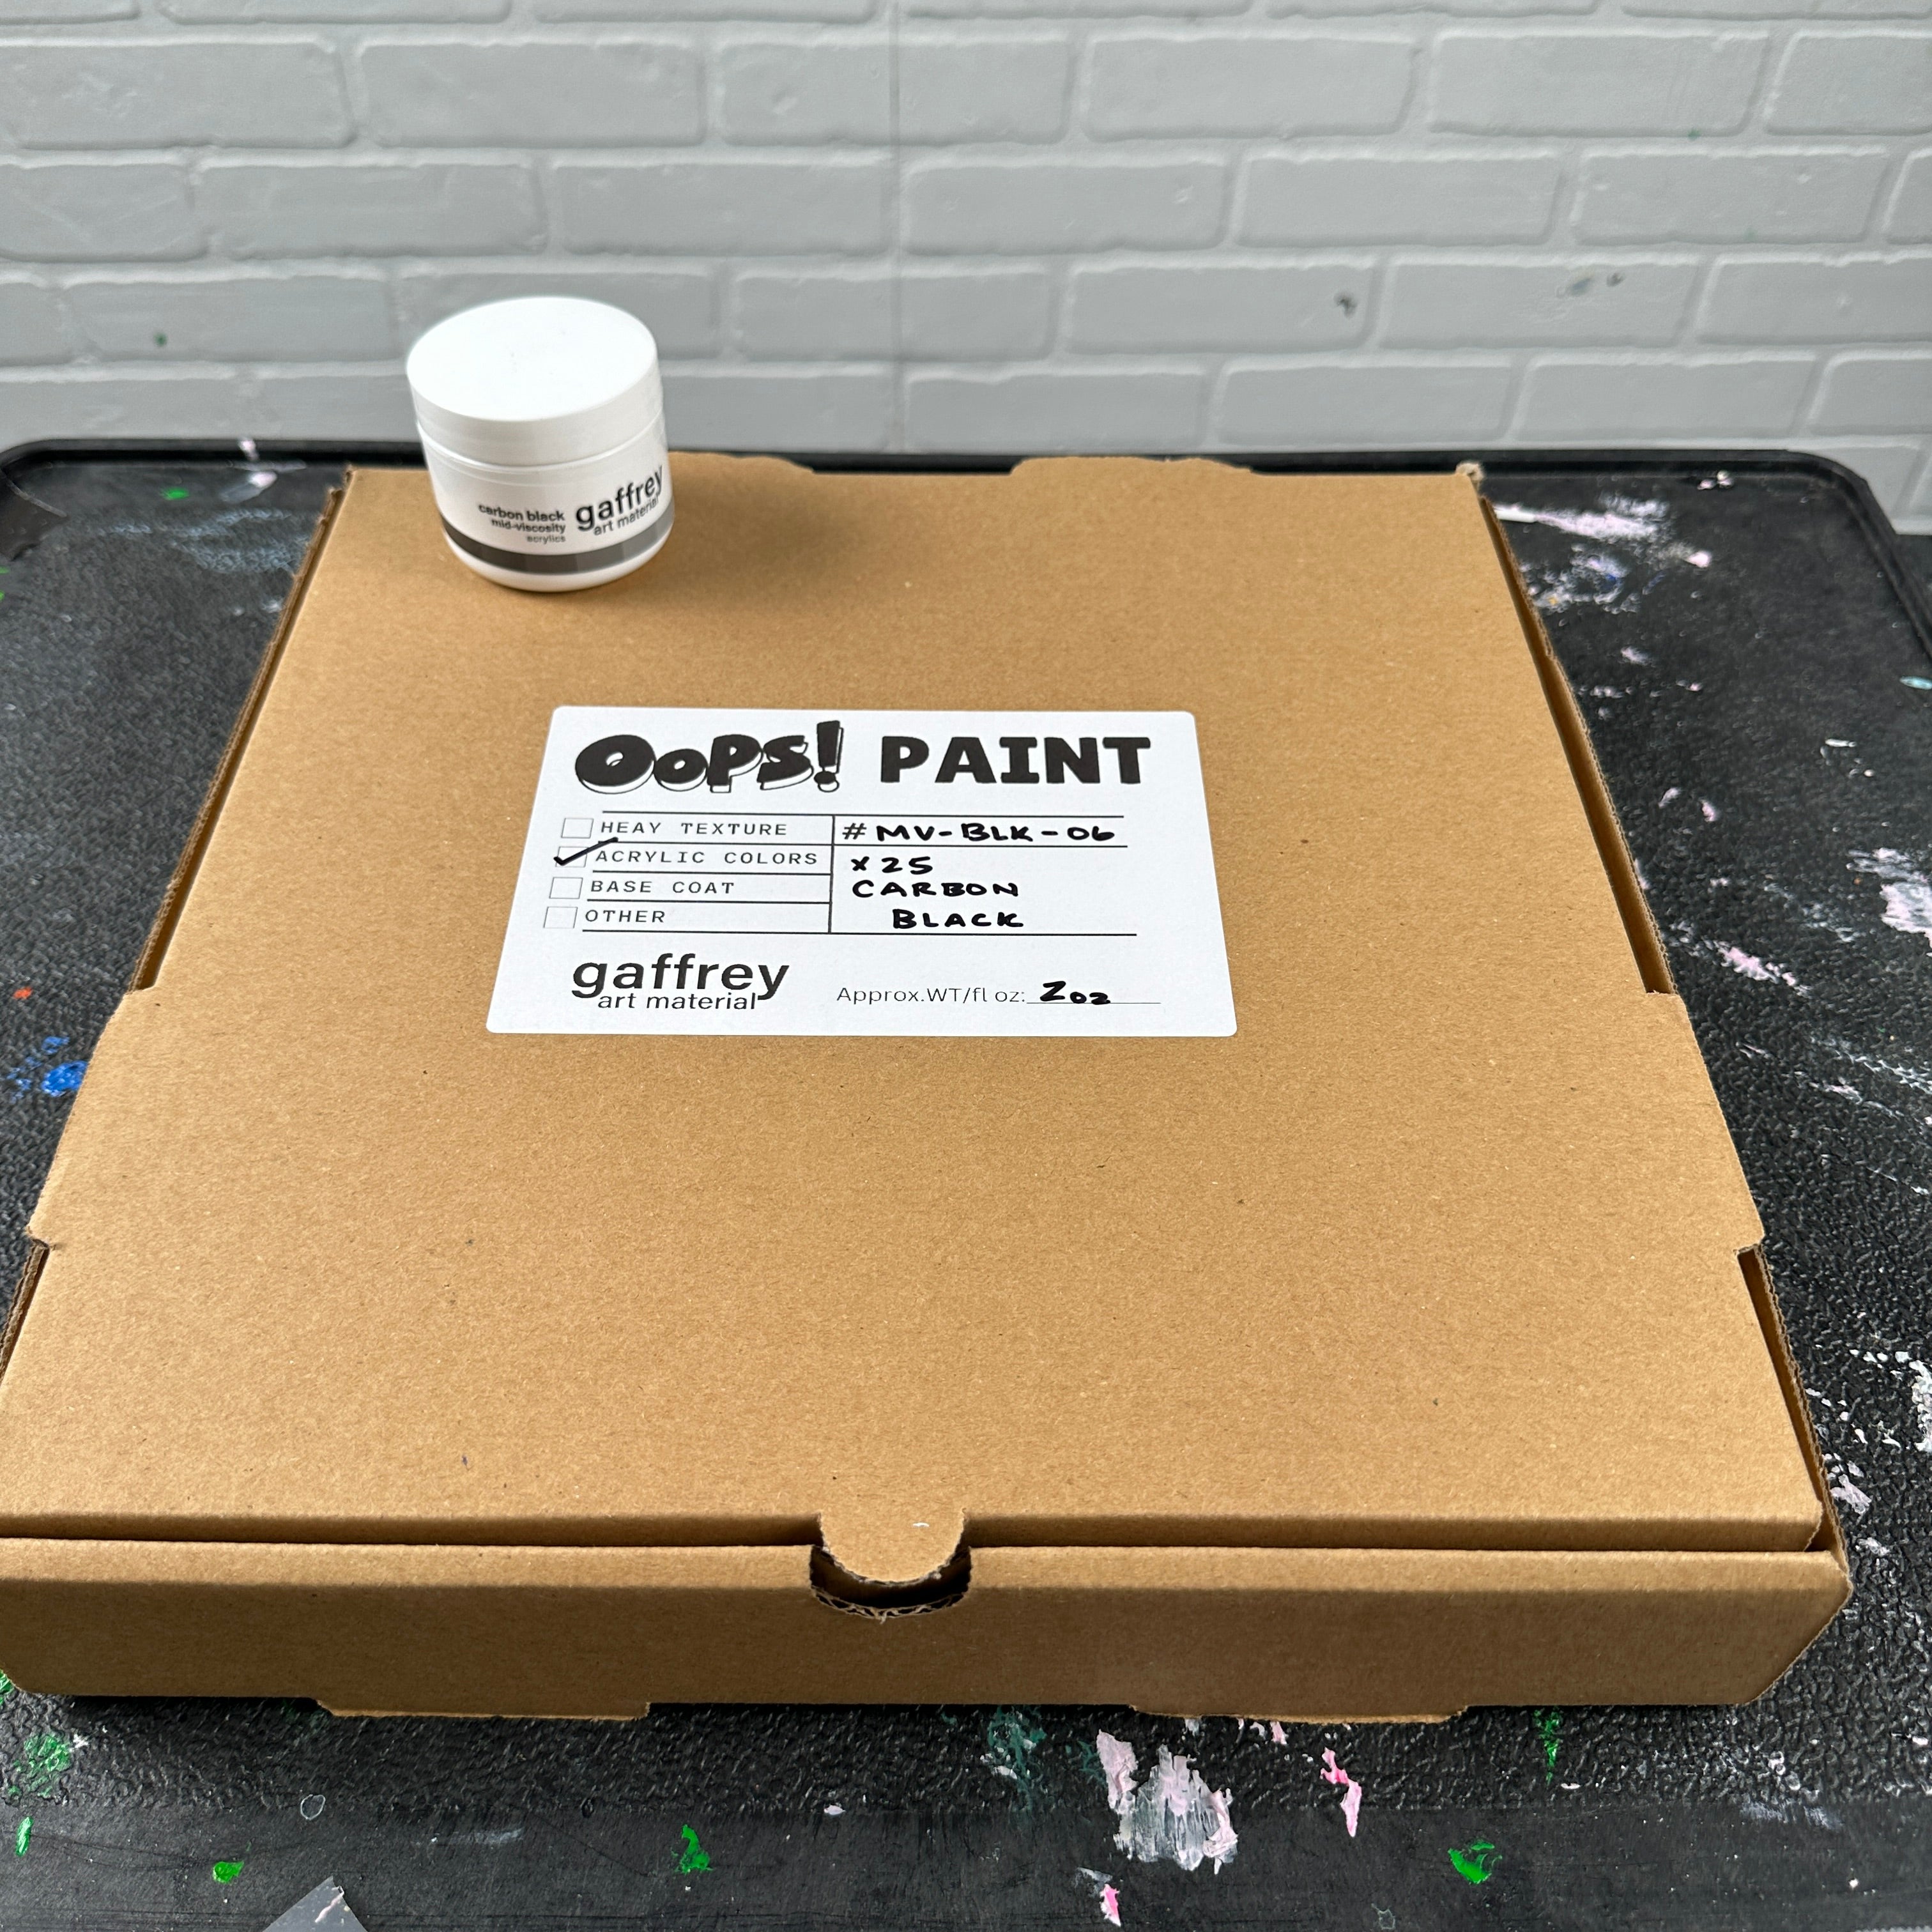 OOP'S! Paint Bundles - Gaffrey Art Material